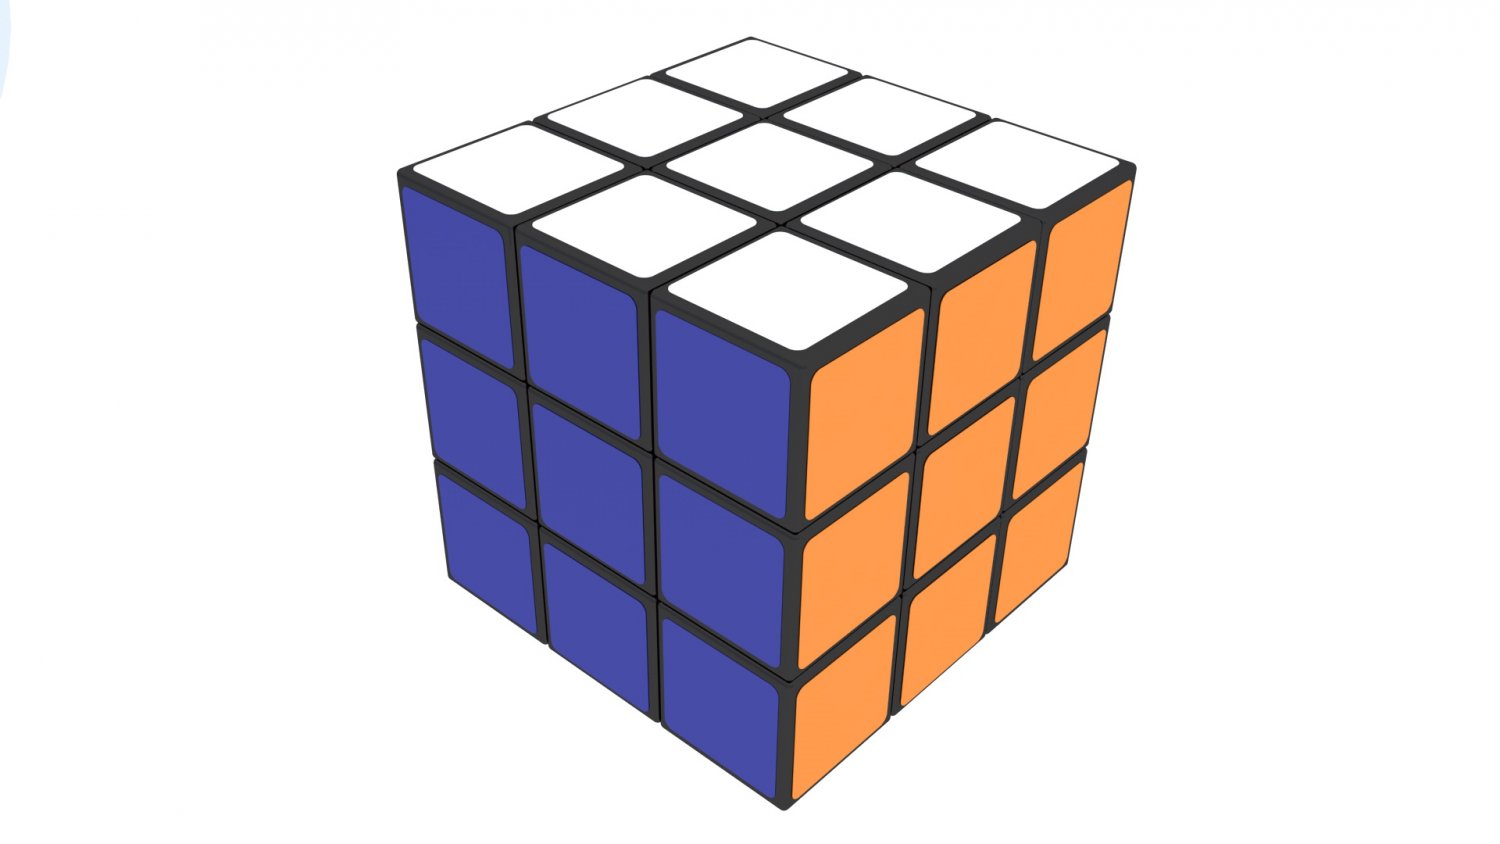 Cube модели. Куб 3х3х3. Модель кубика. Кубик Рубика в перспективе. Кубик Рубика на белом фоне.